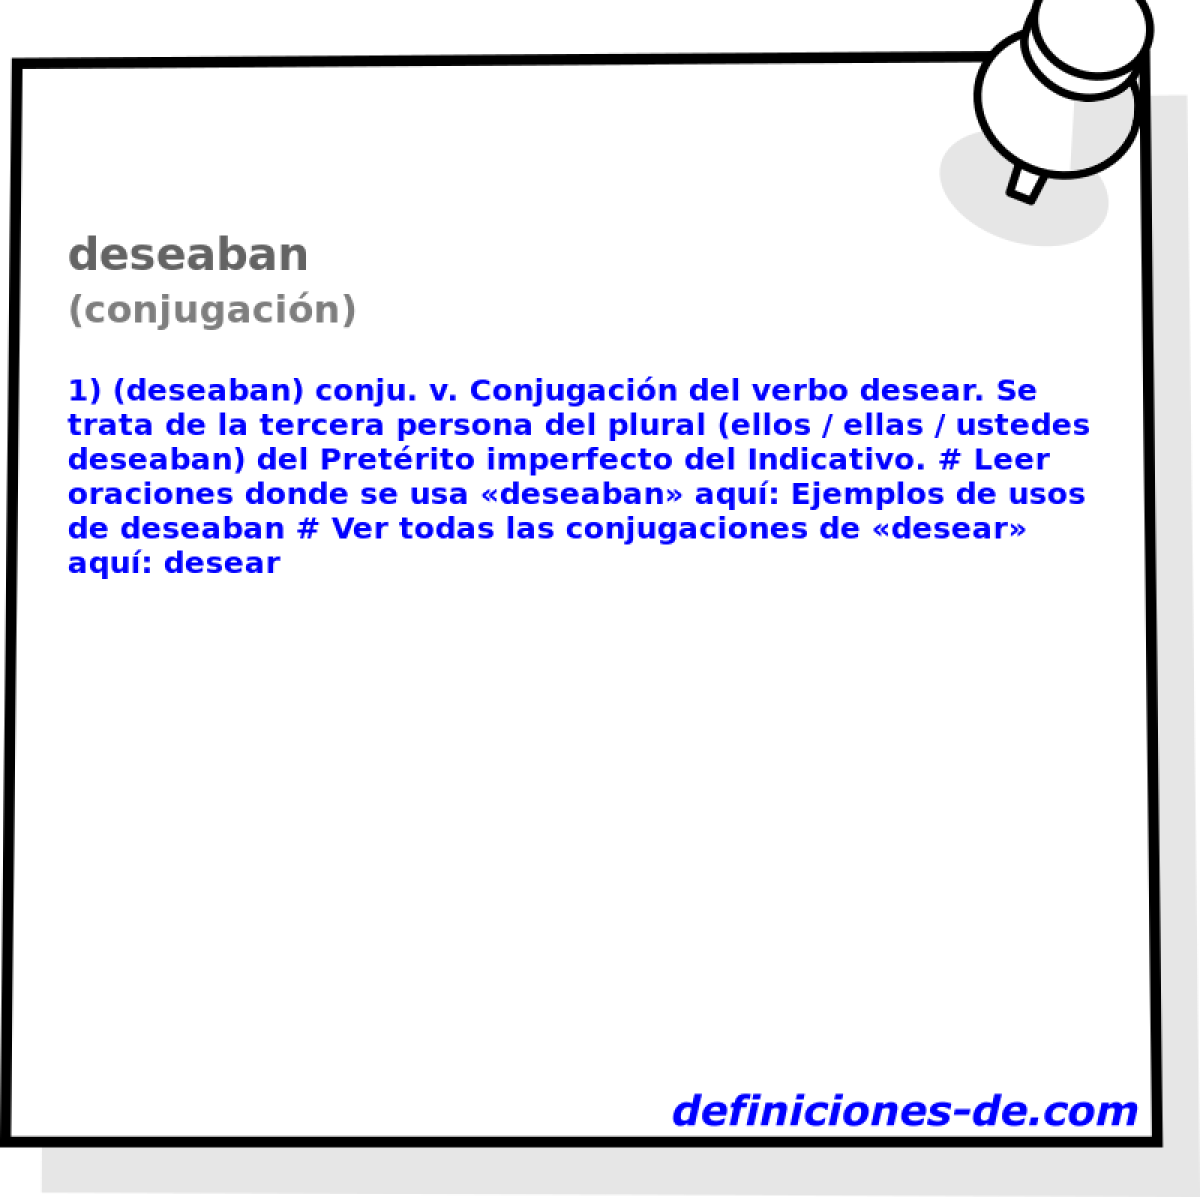 deseaban (conjugacin)